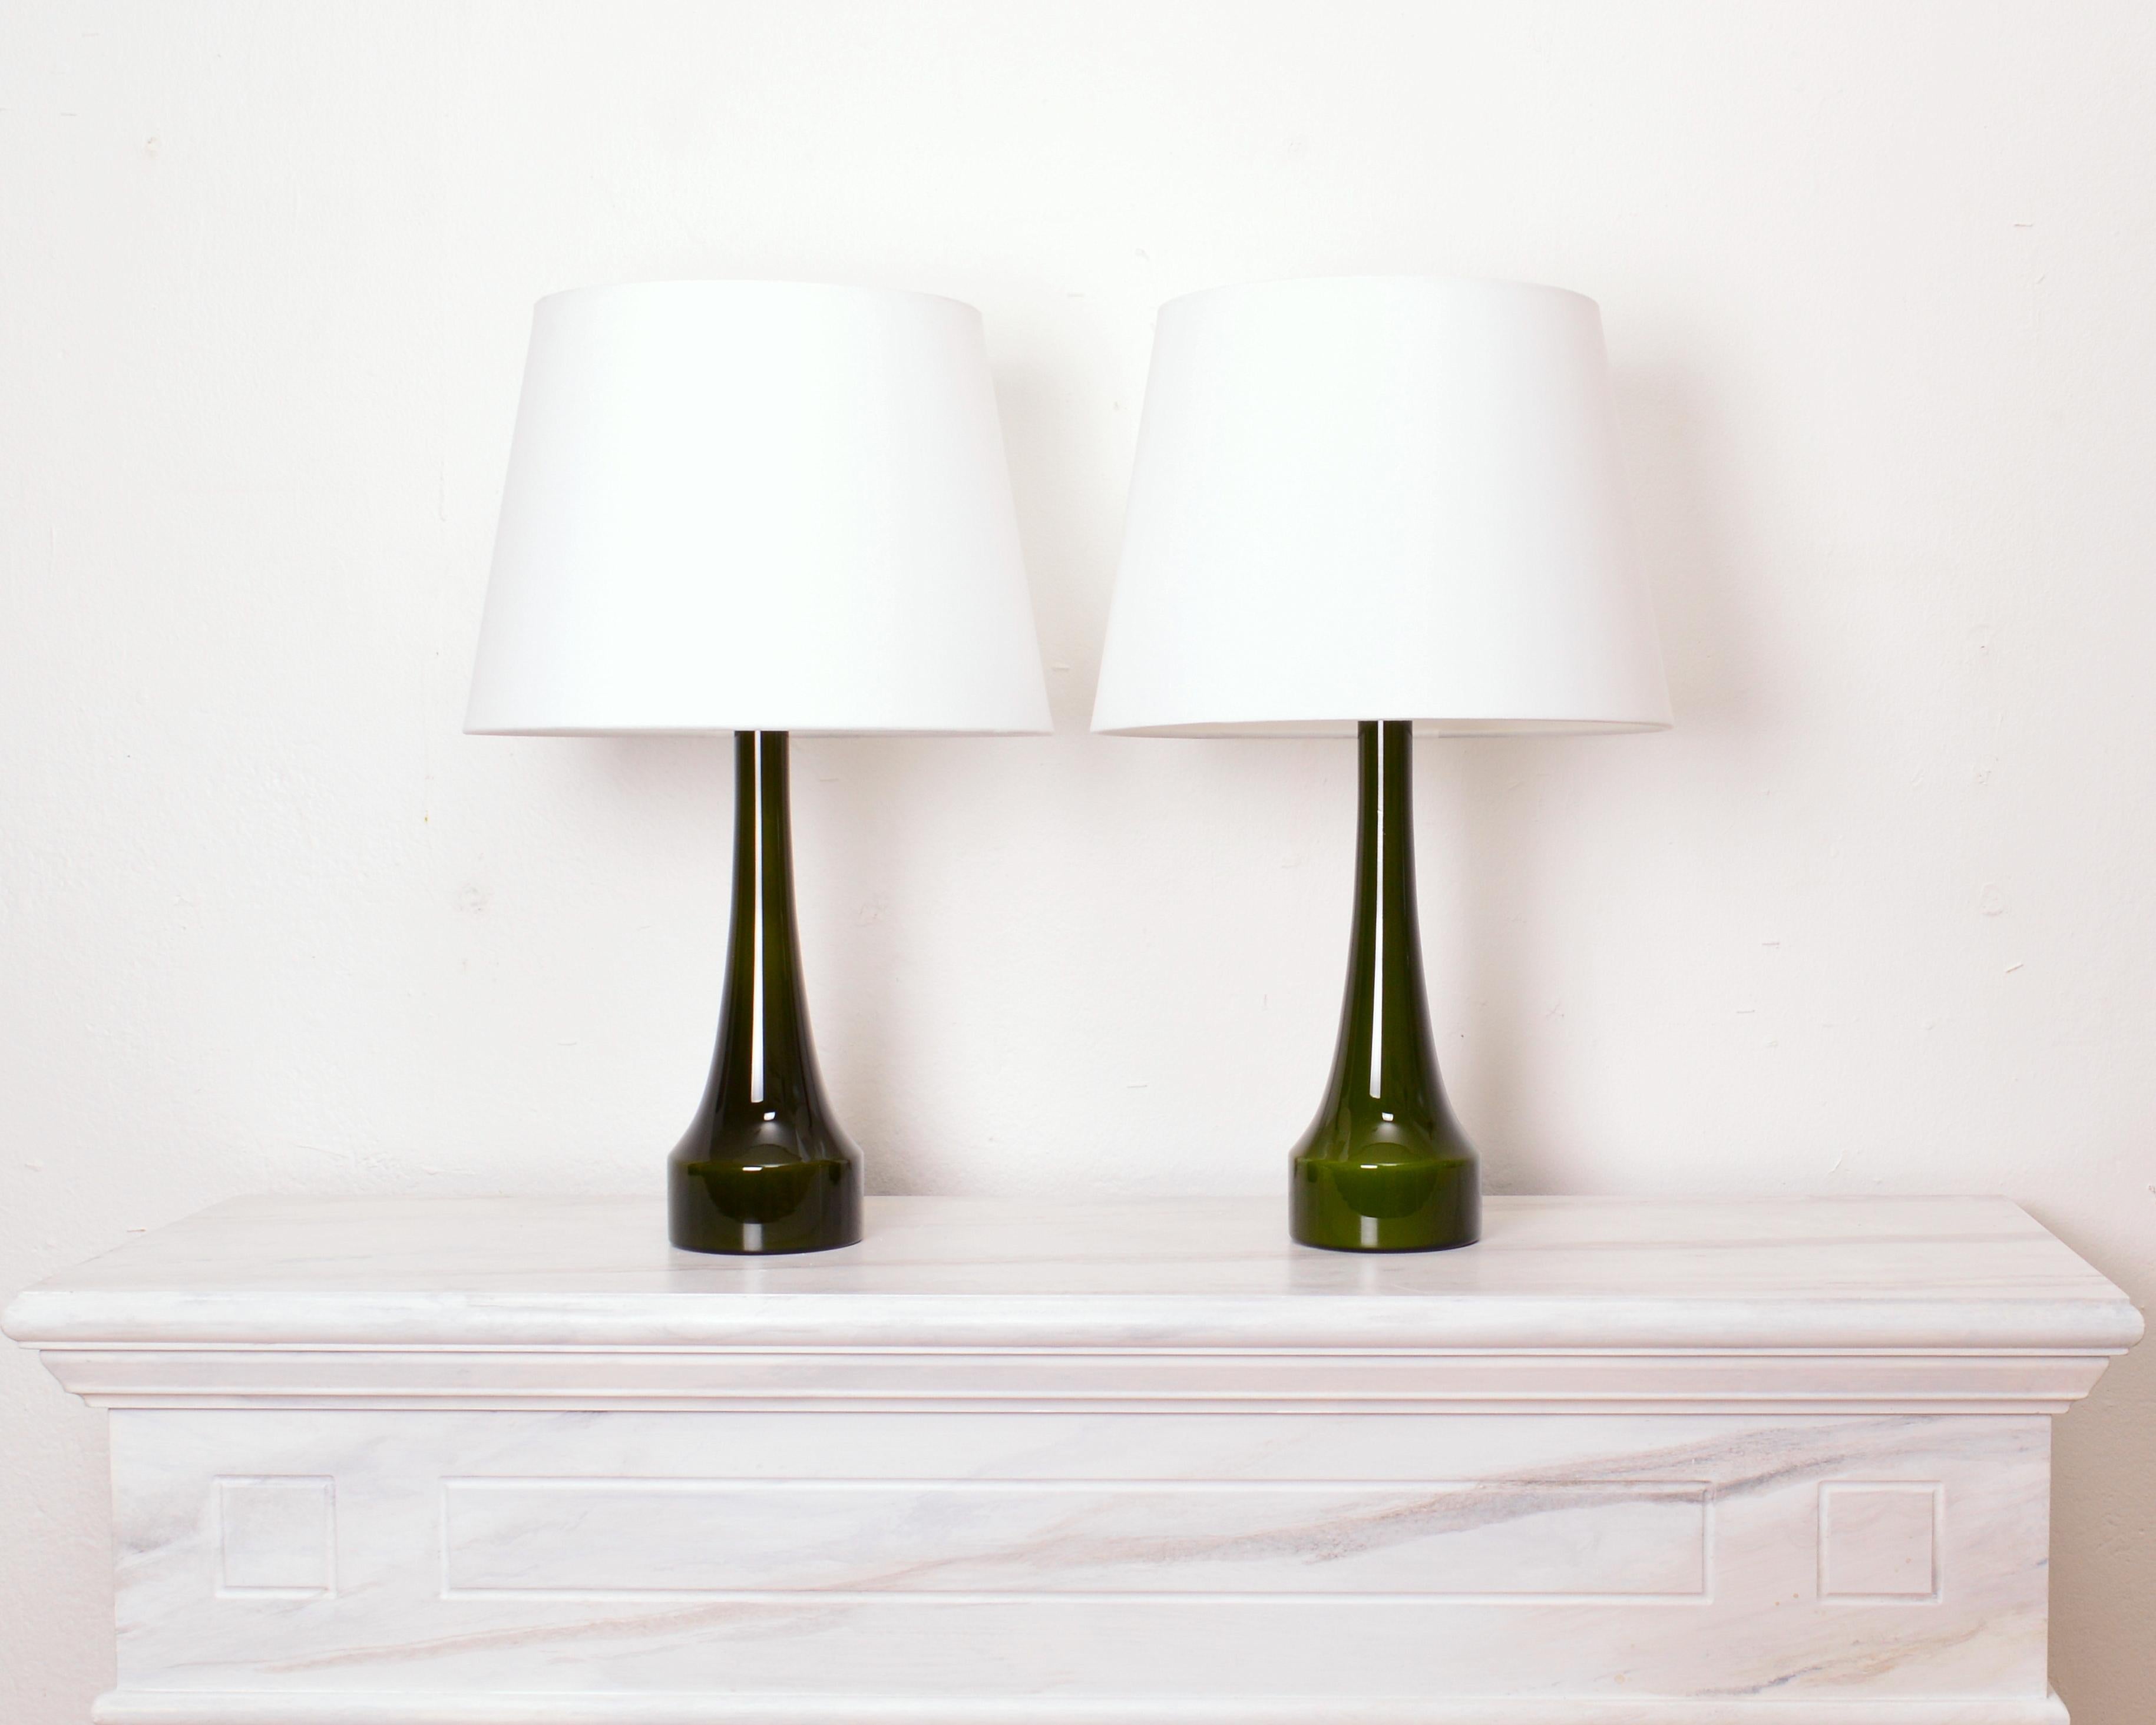 Satz von zwei Tischlampen von Bergboms, Schweden 1960er Jahre. Die Lampen sind aus Glas und wurden von Holmegaard, Dänemark, hergestellt. Das Design ist einfach und elegant mit einer schmalen Taille und tiefgrüner Farbe. Zustand: Ausgezeichneter